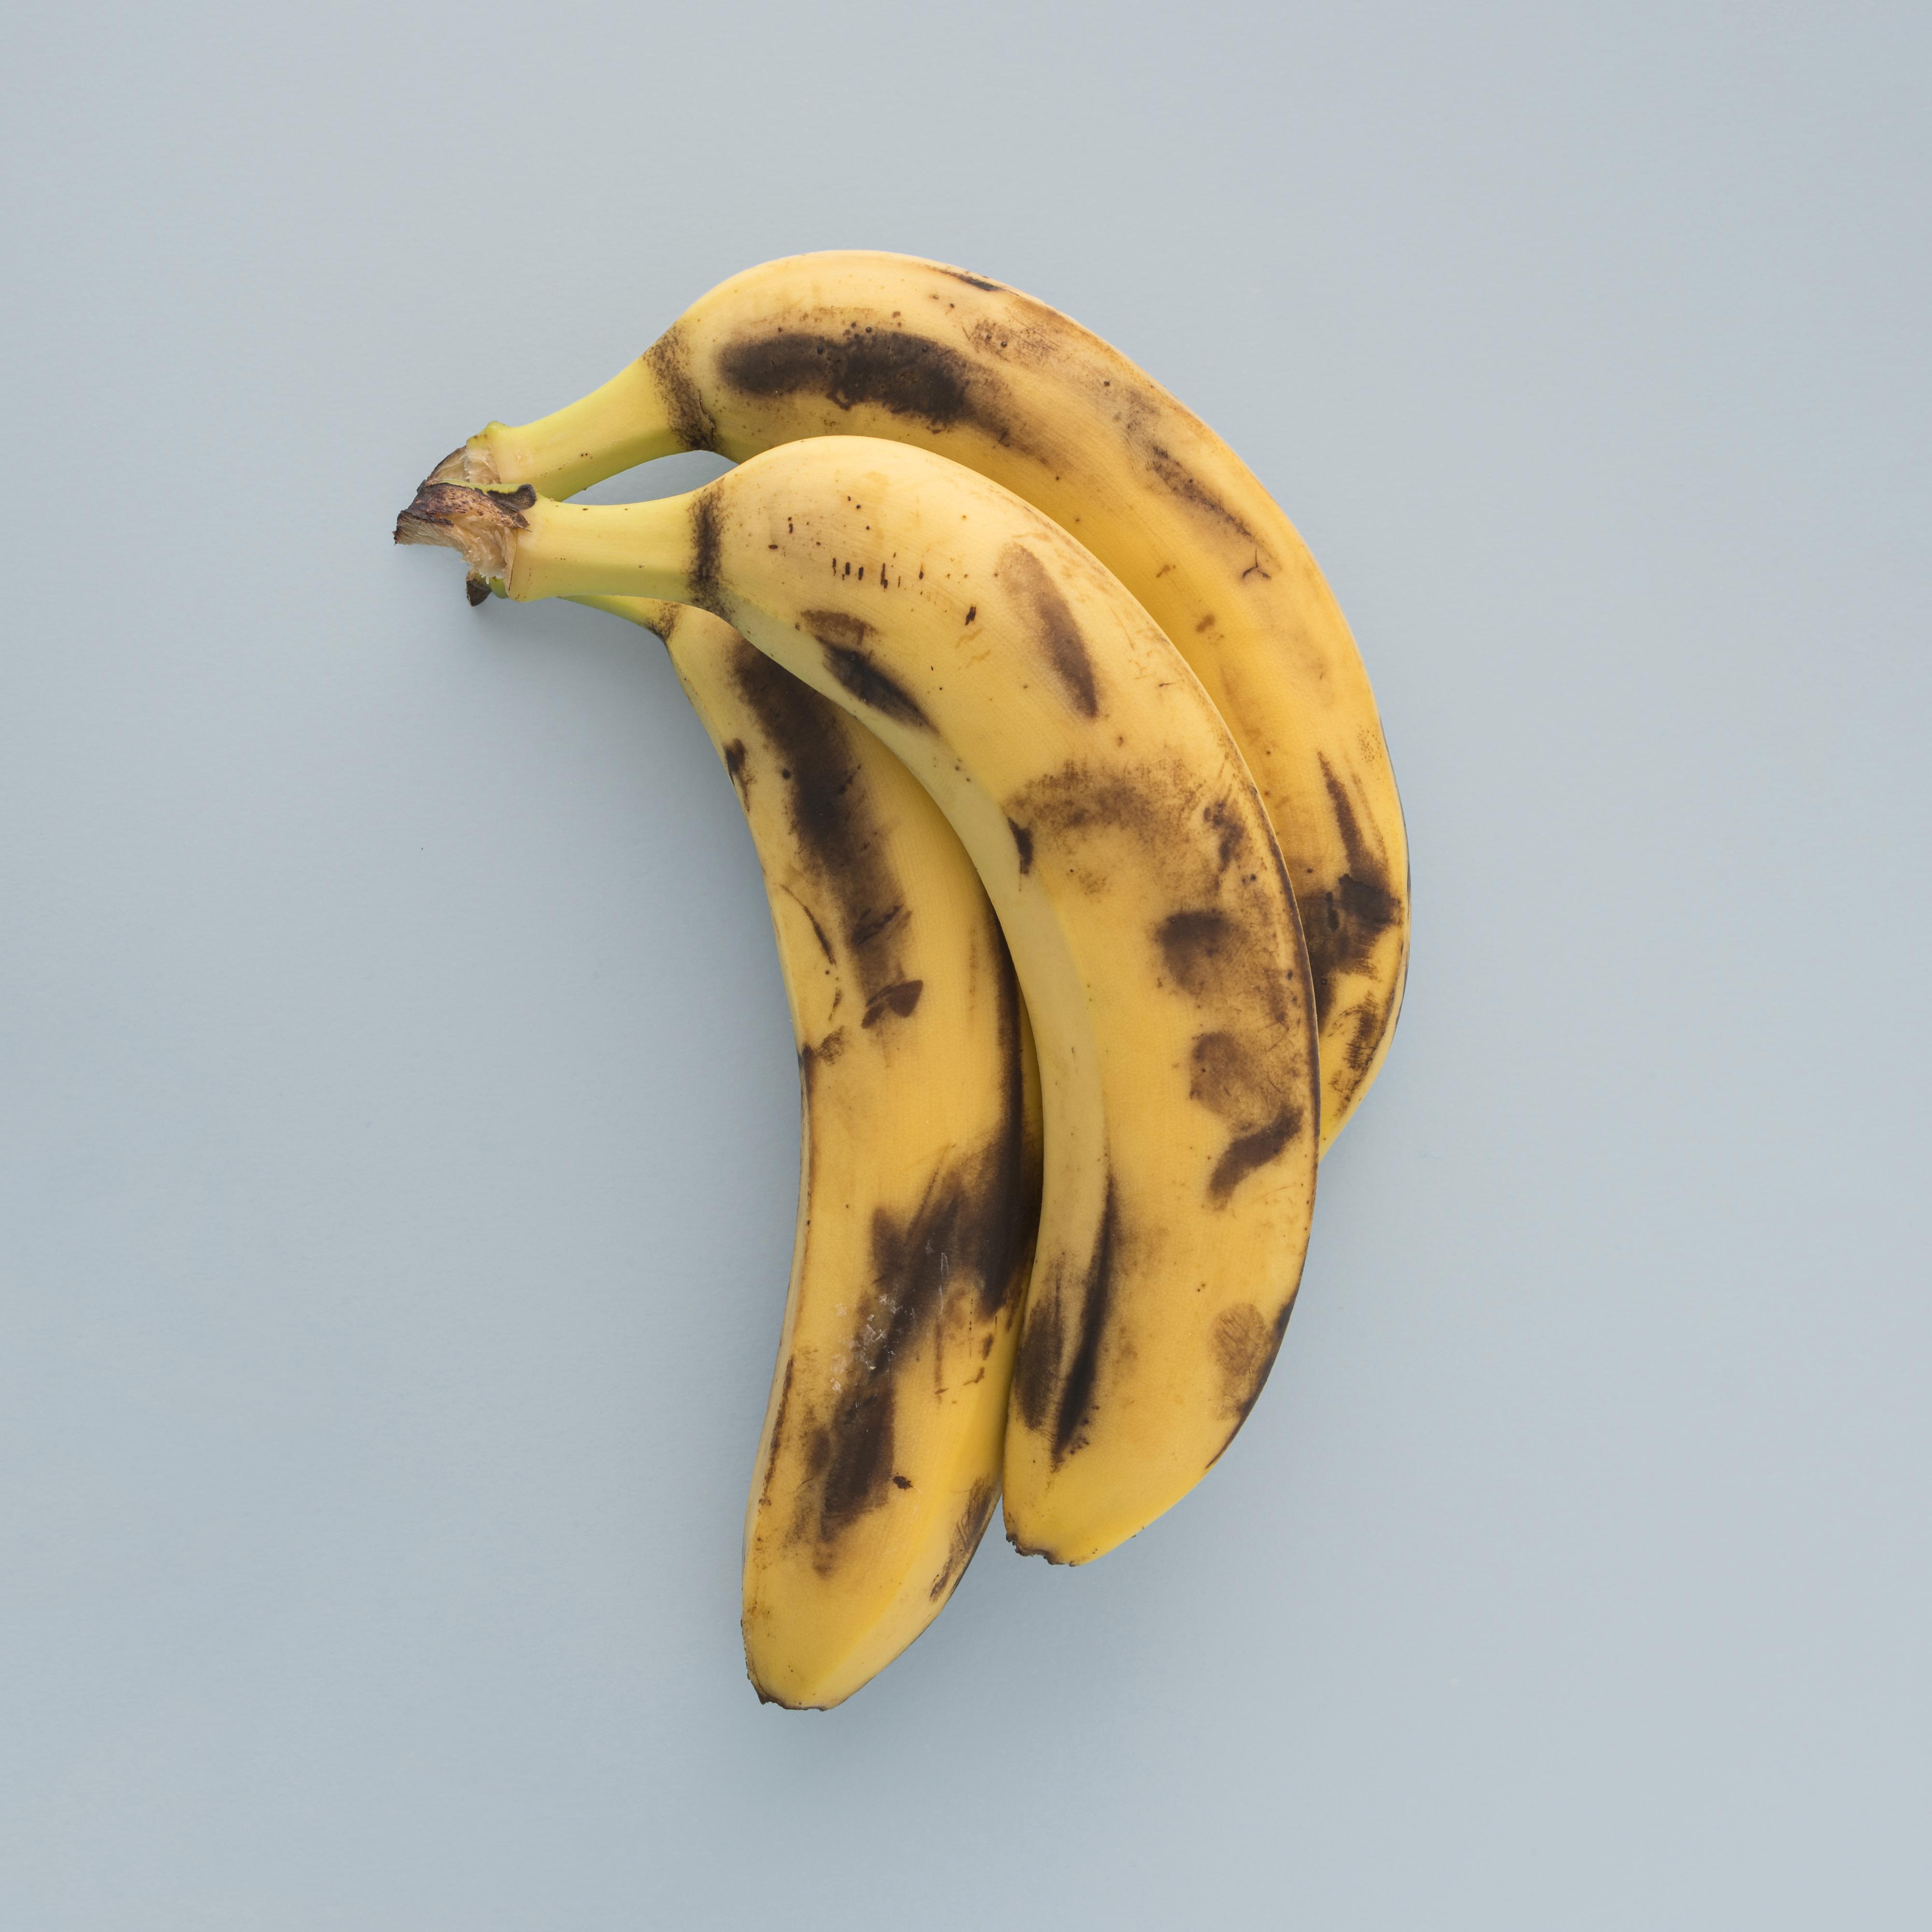 A farinha da casca de banana contém o antioxidante luteína (que ajuda a reduzir o envelhecimento celular)